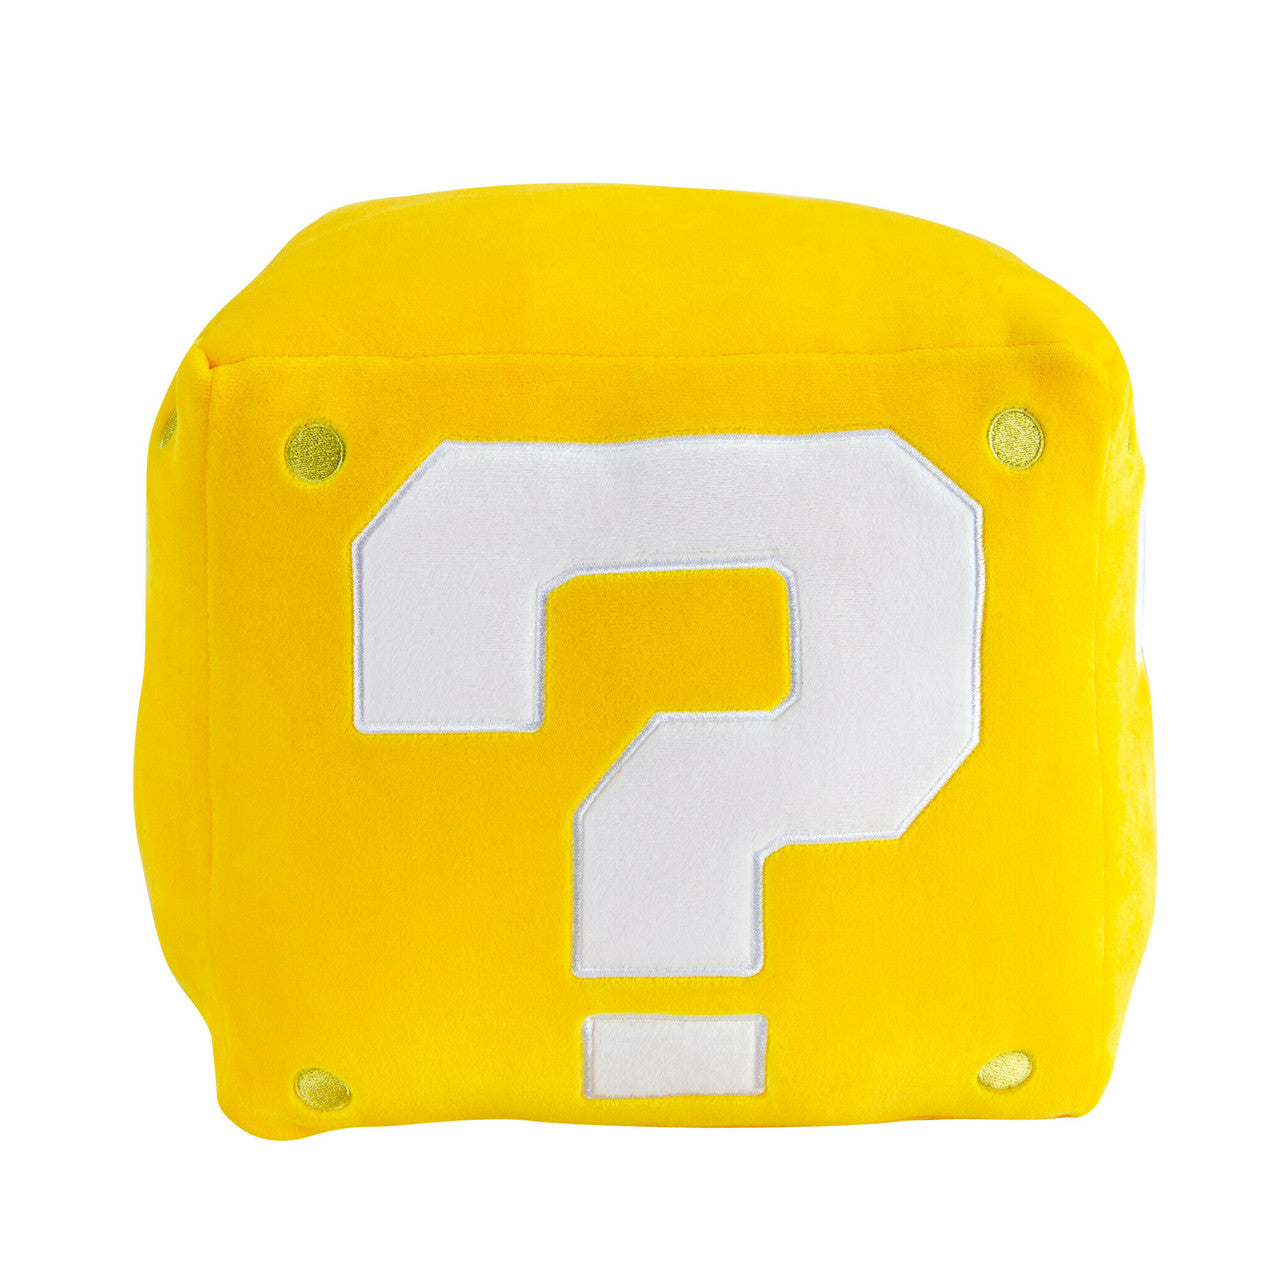 Super Mario Question Block Large Plush